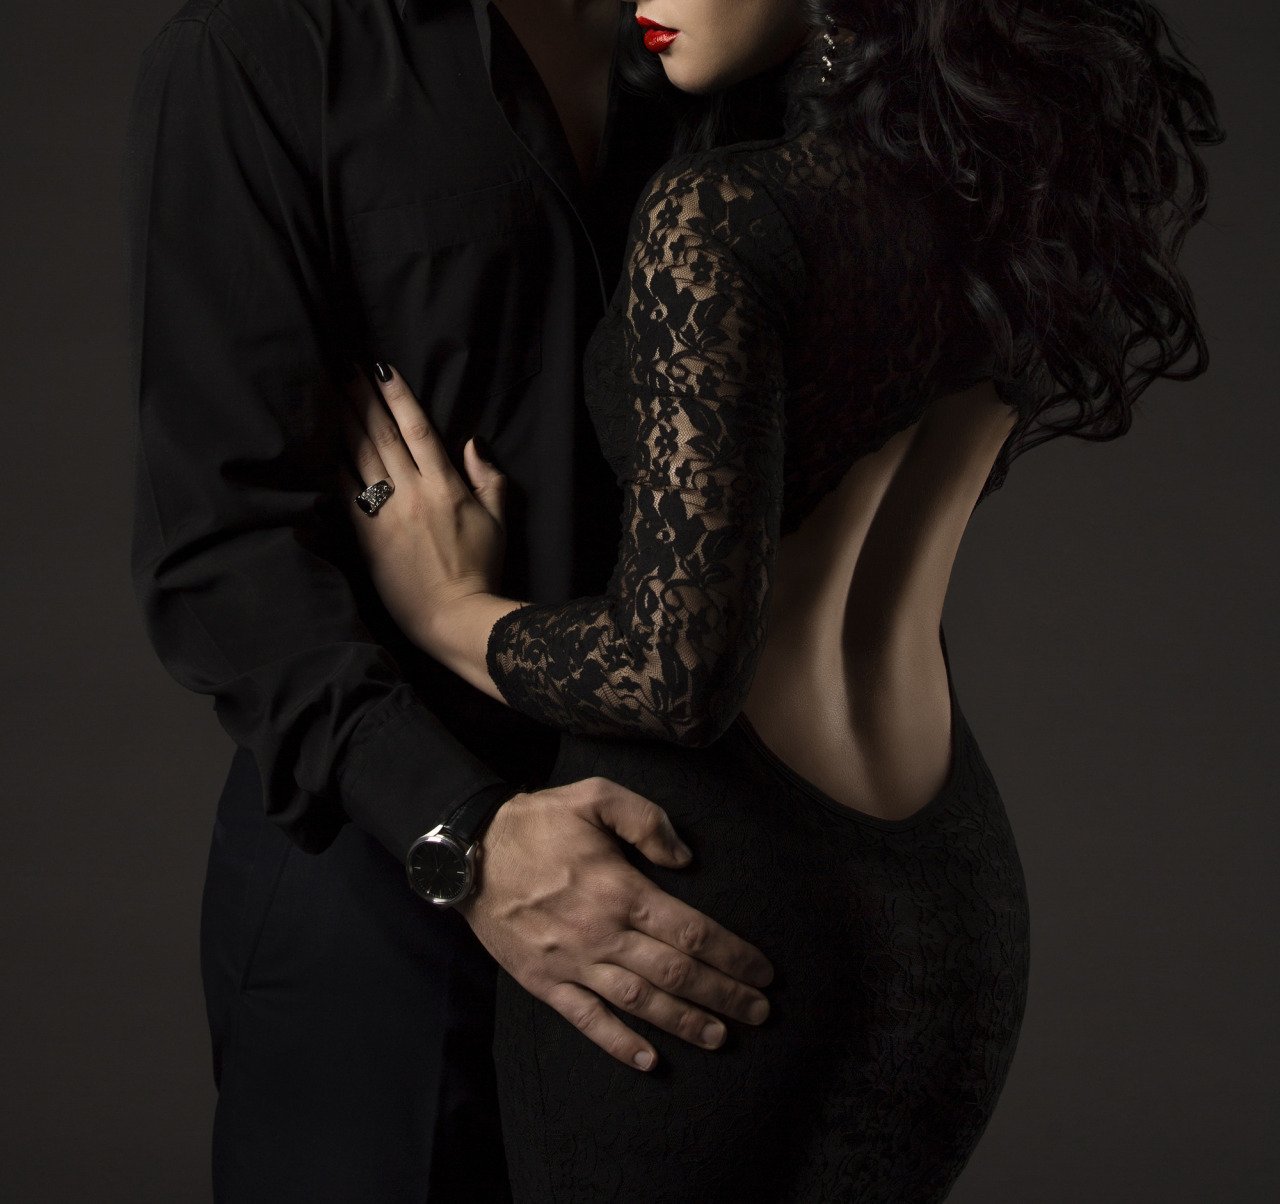 Чувственный с двумя. Мужчина и женщина страсть. Девушка в Вечернем платье с мужчиной. Фотосессия в черном платье. Элегантные мужчина и женщина.